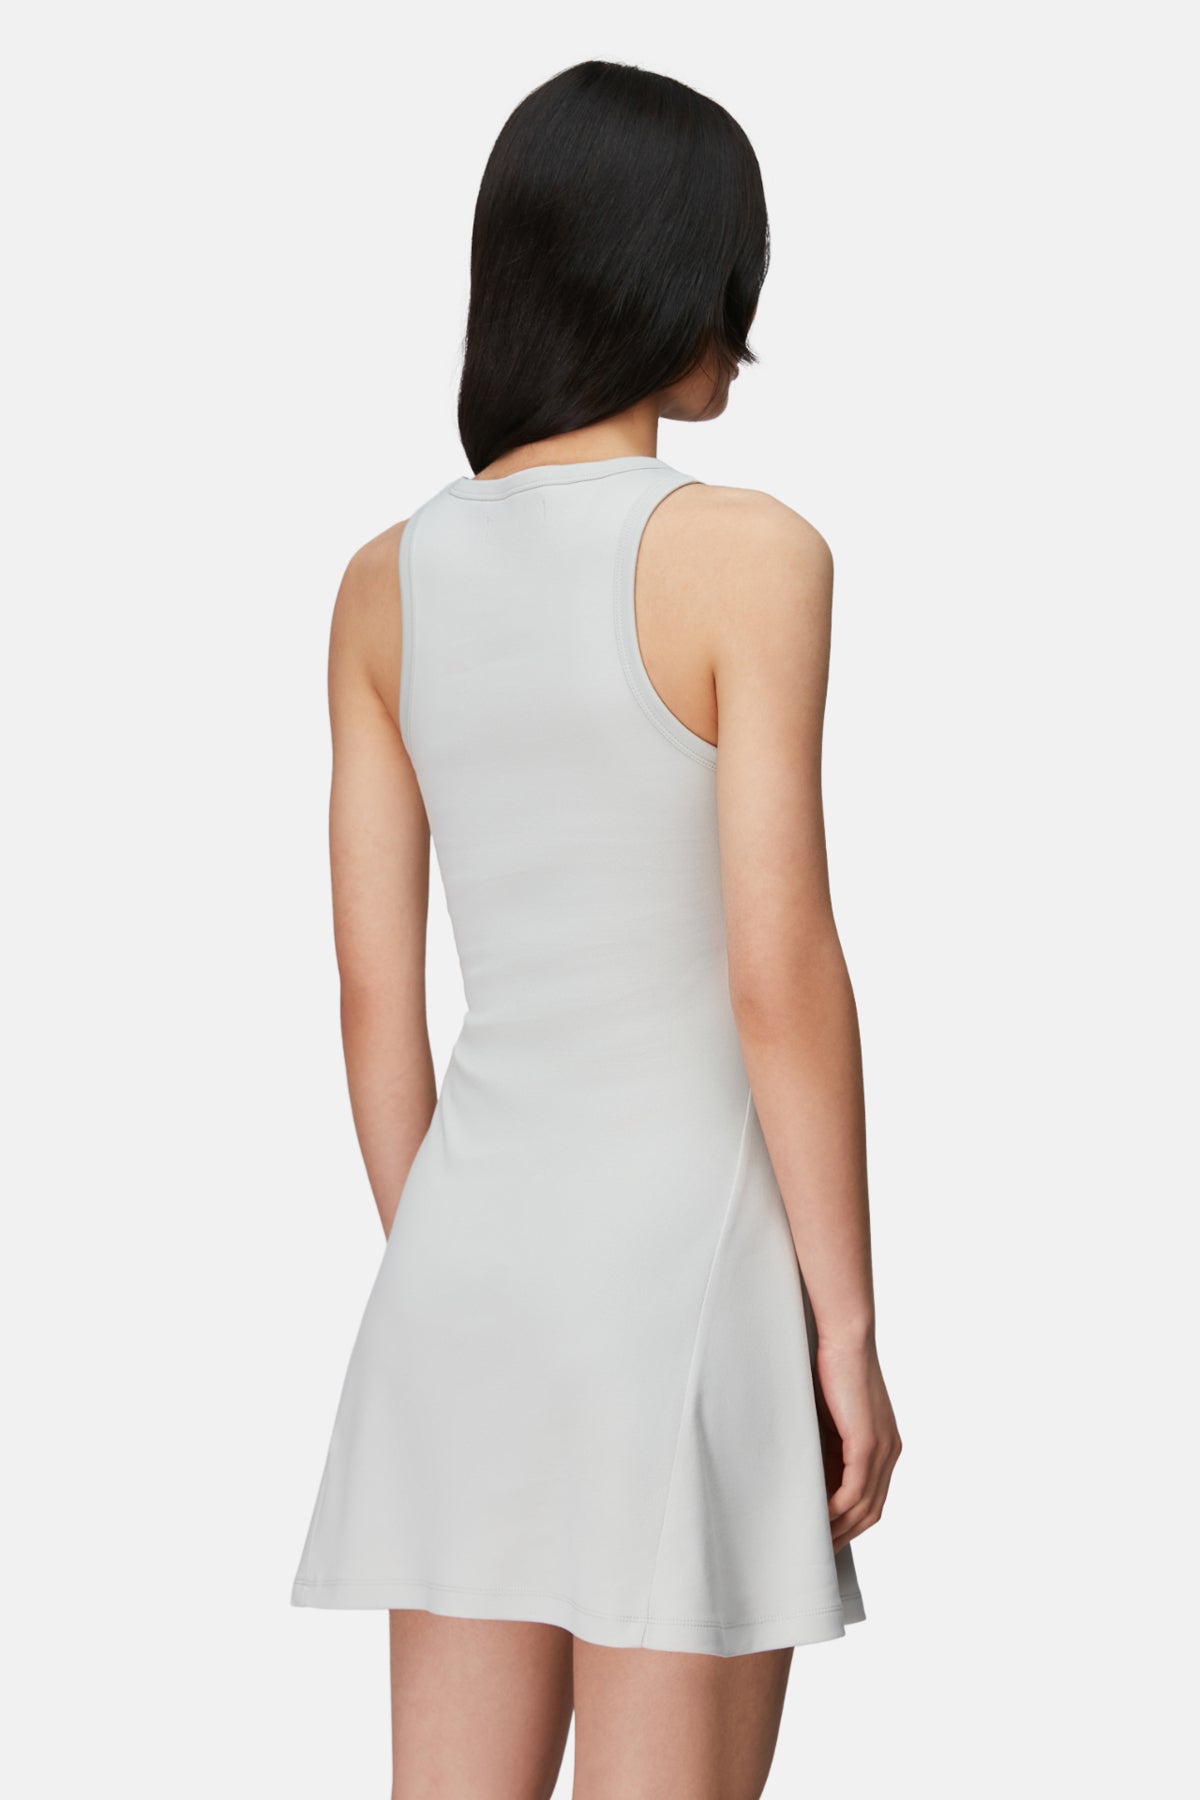 Sincap Premium Elbise - Gri